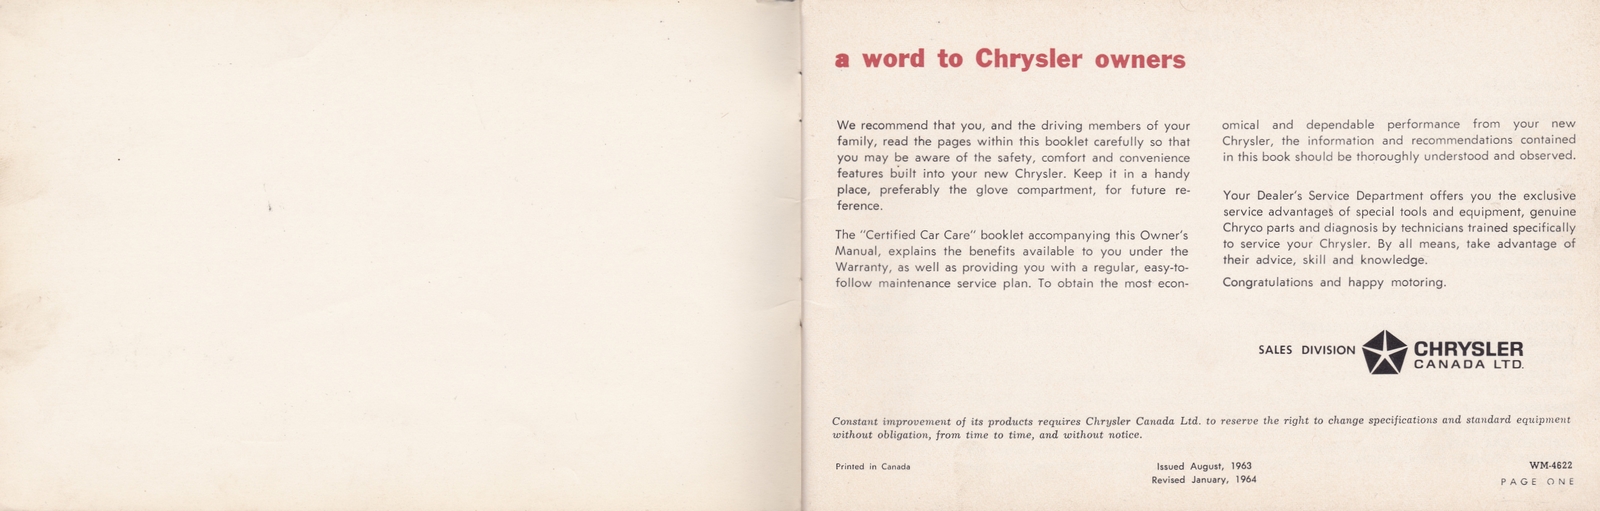 n_1964 Chrysler Owner's Manual (Cdn)-00a-01.jpg